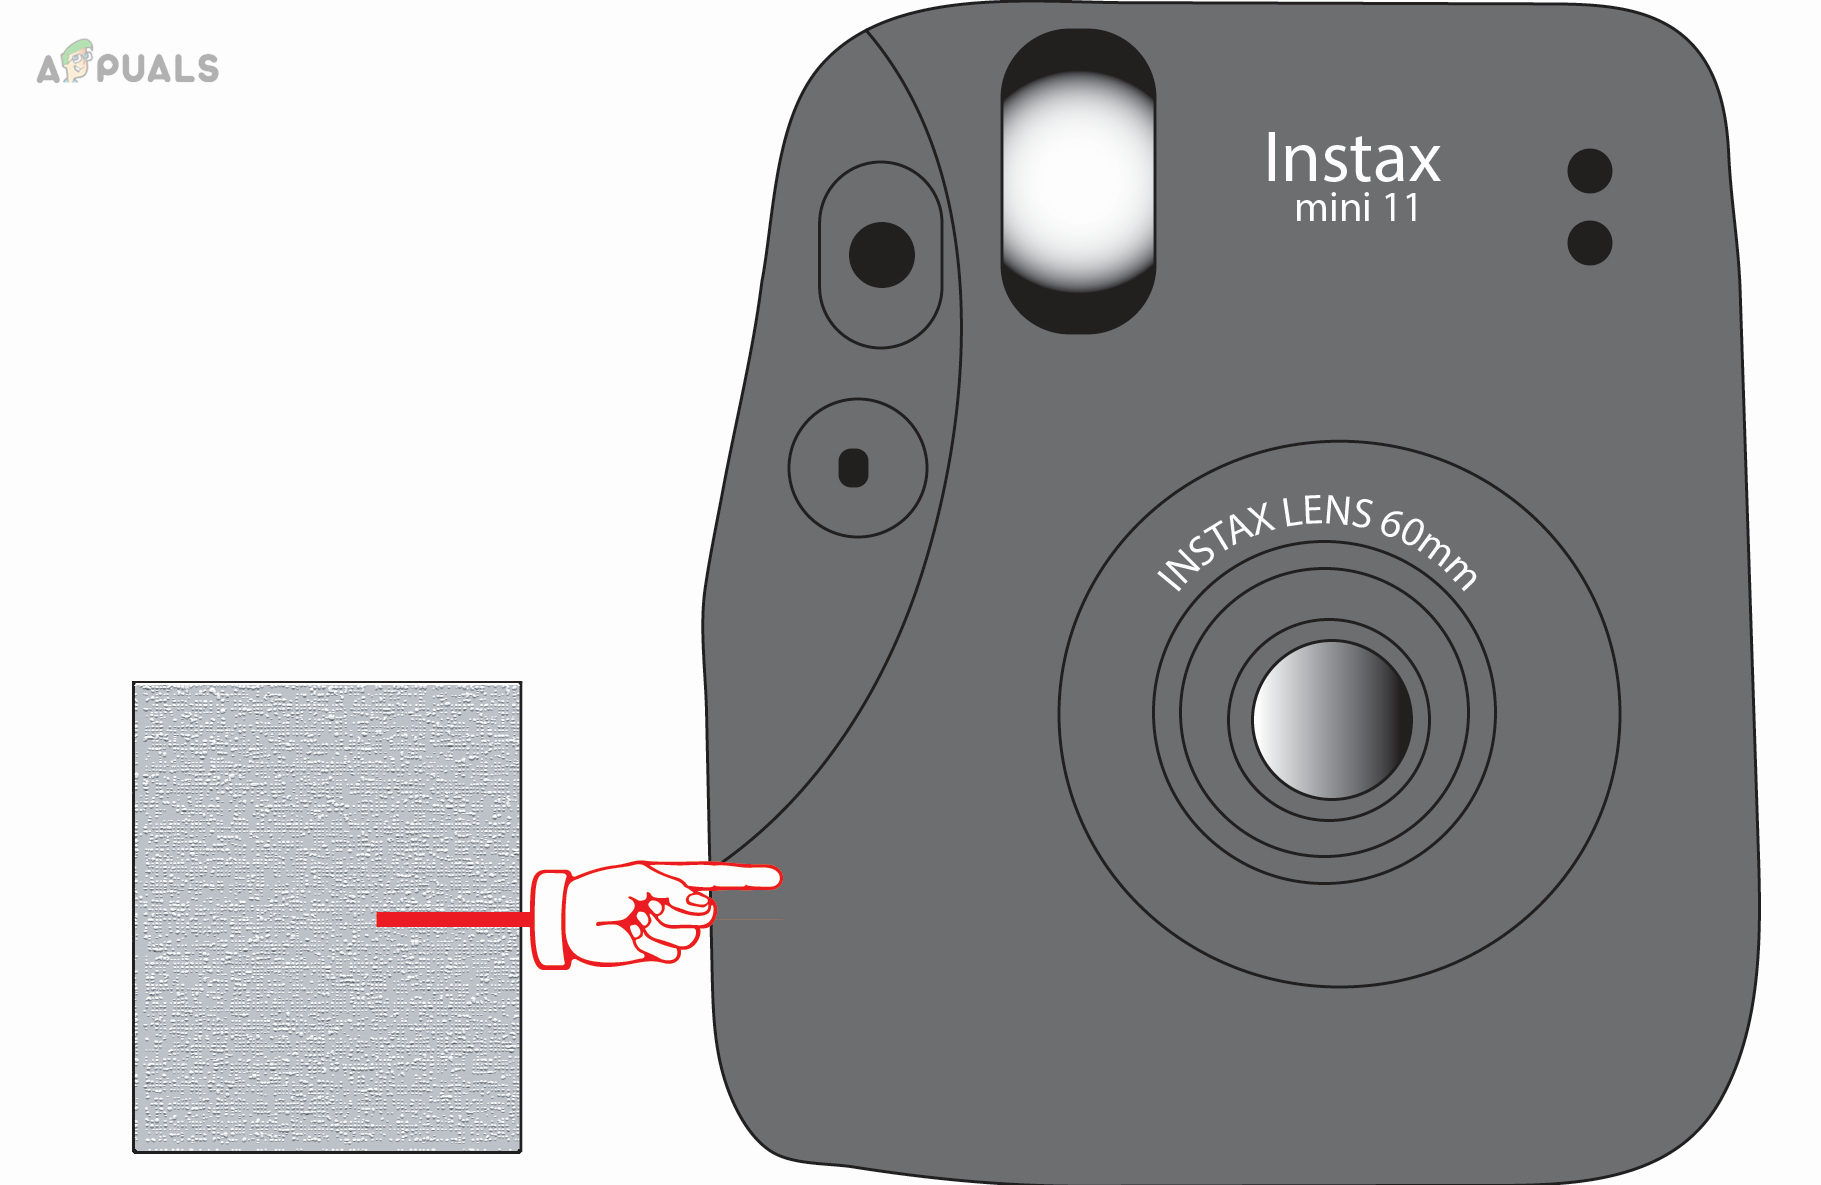 Clean the Instax Mini 11 Camera